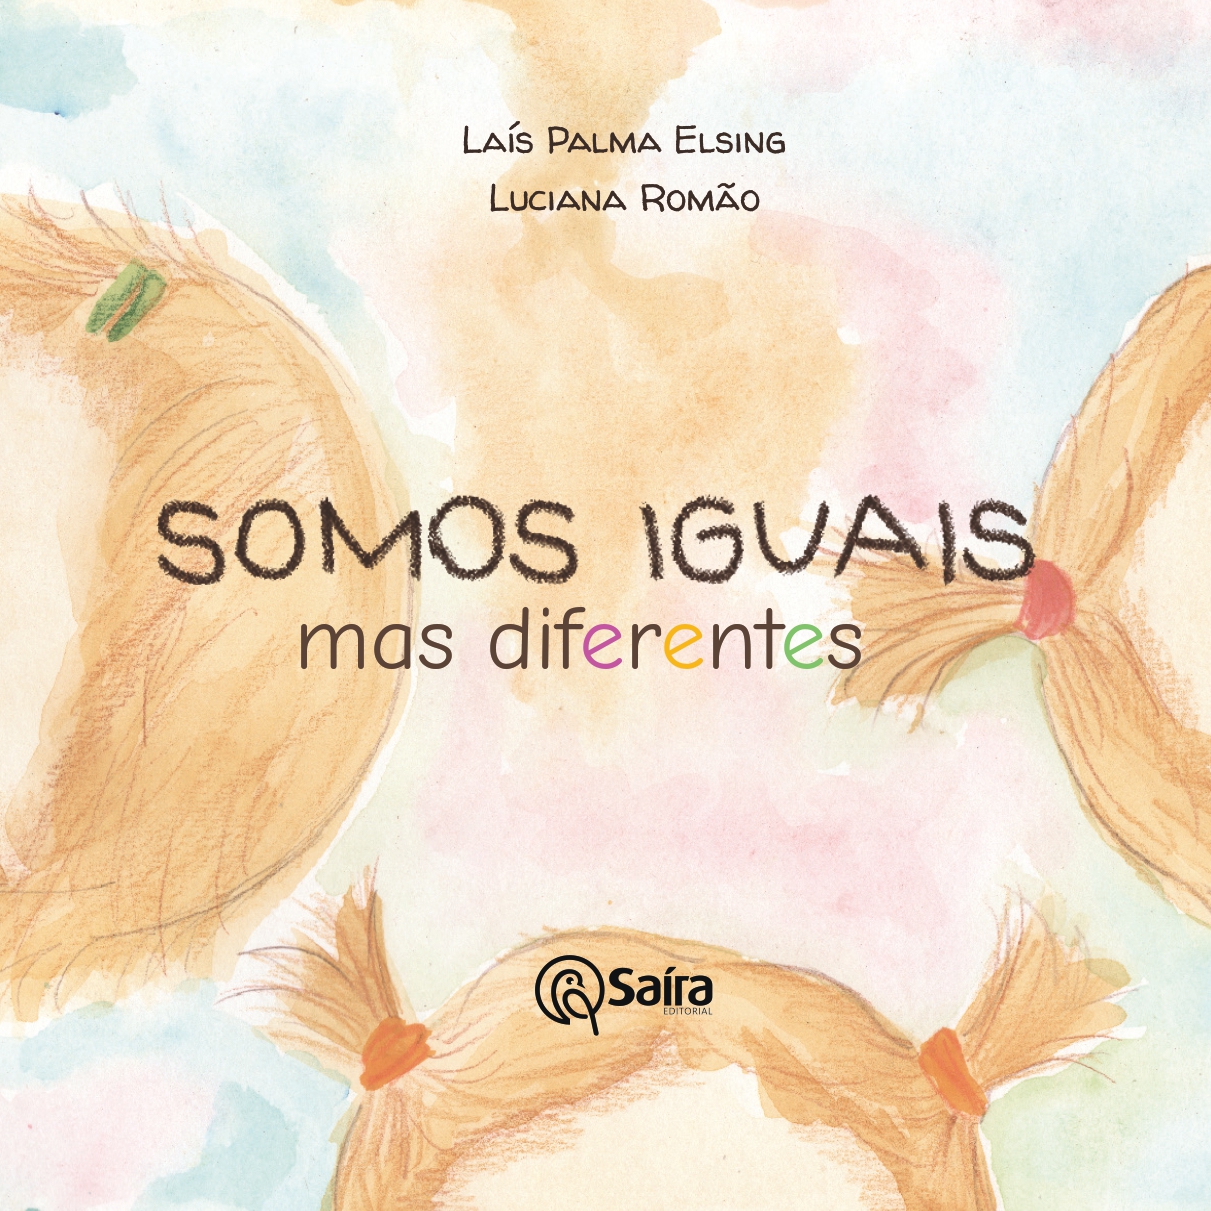 Capa do livro "Somos iguais, mas diferentes", de Laís Palma Elsing e Luciana Romão. A imagem mostra a cabeça de três crianças loiras, com diferentes penteados.